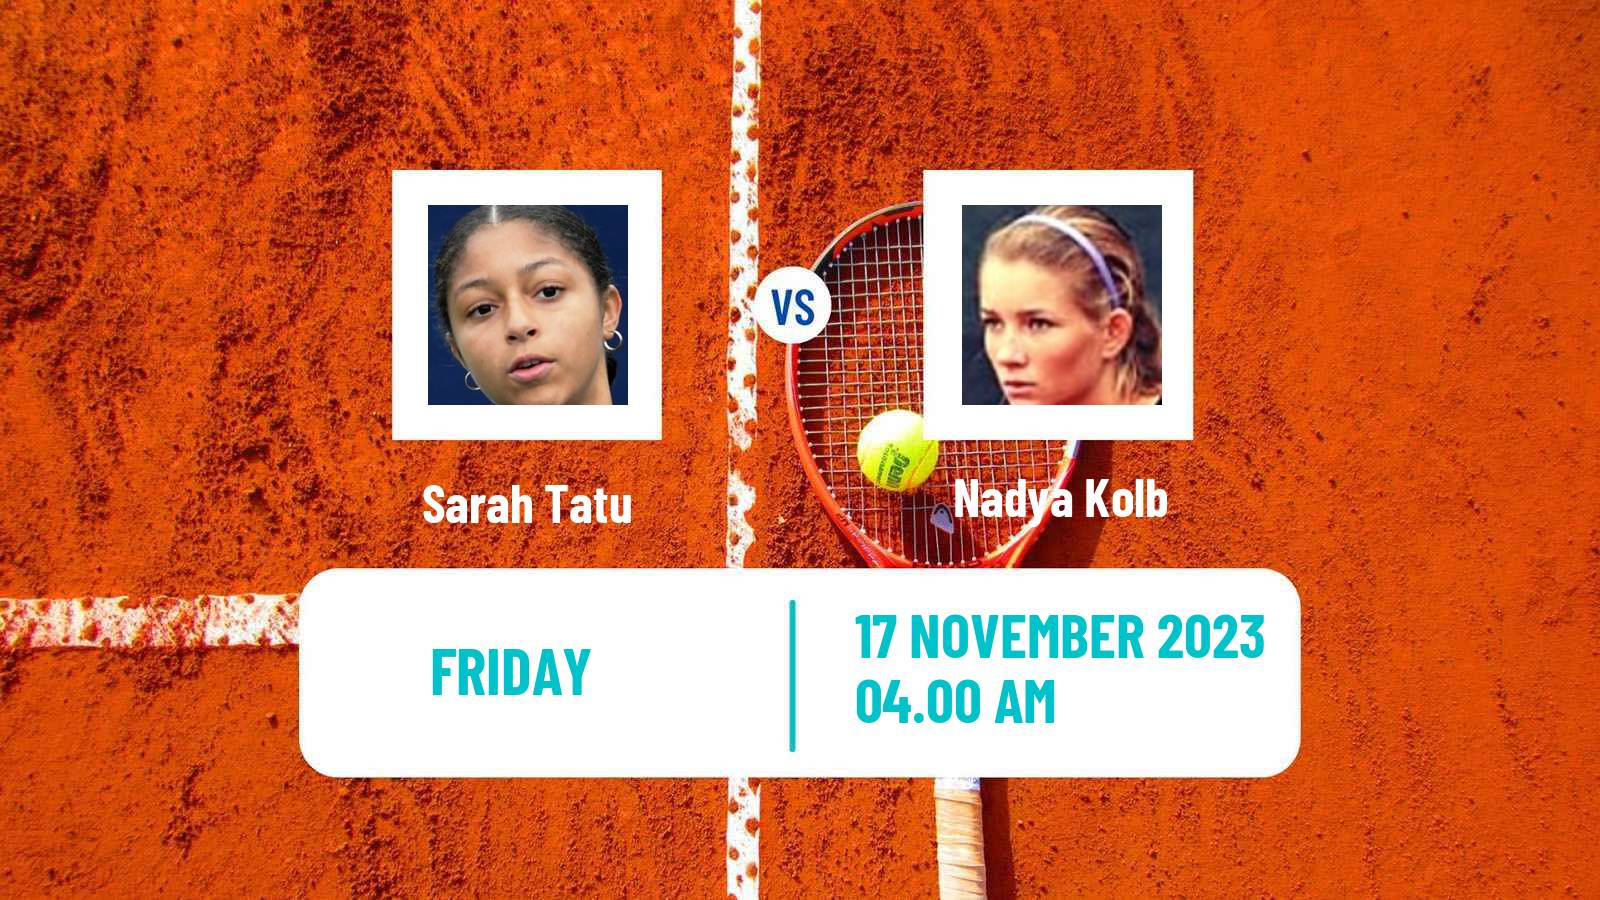 Tennis ITF W15 Nules Women Sarah Tatu - Nadya Kolb